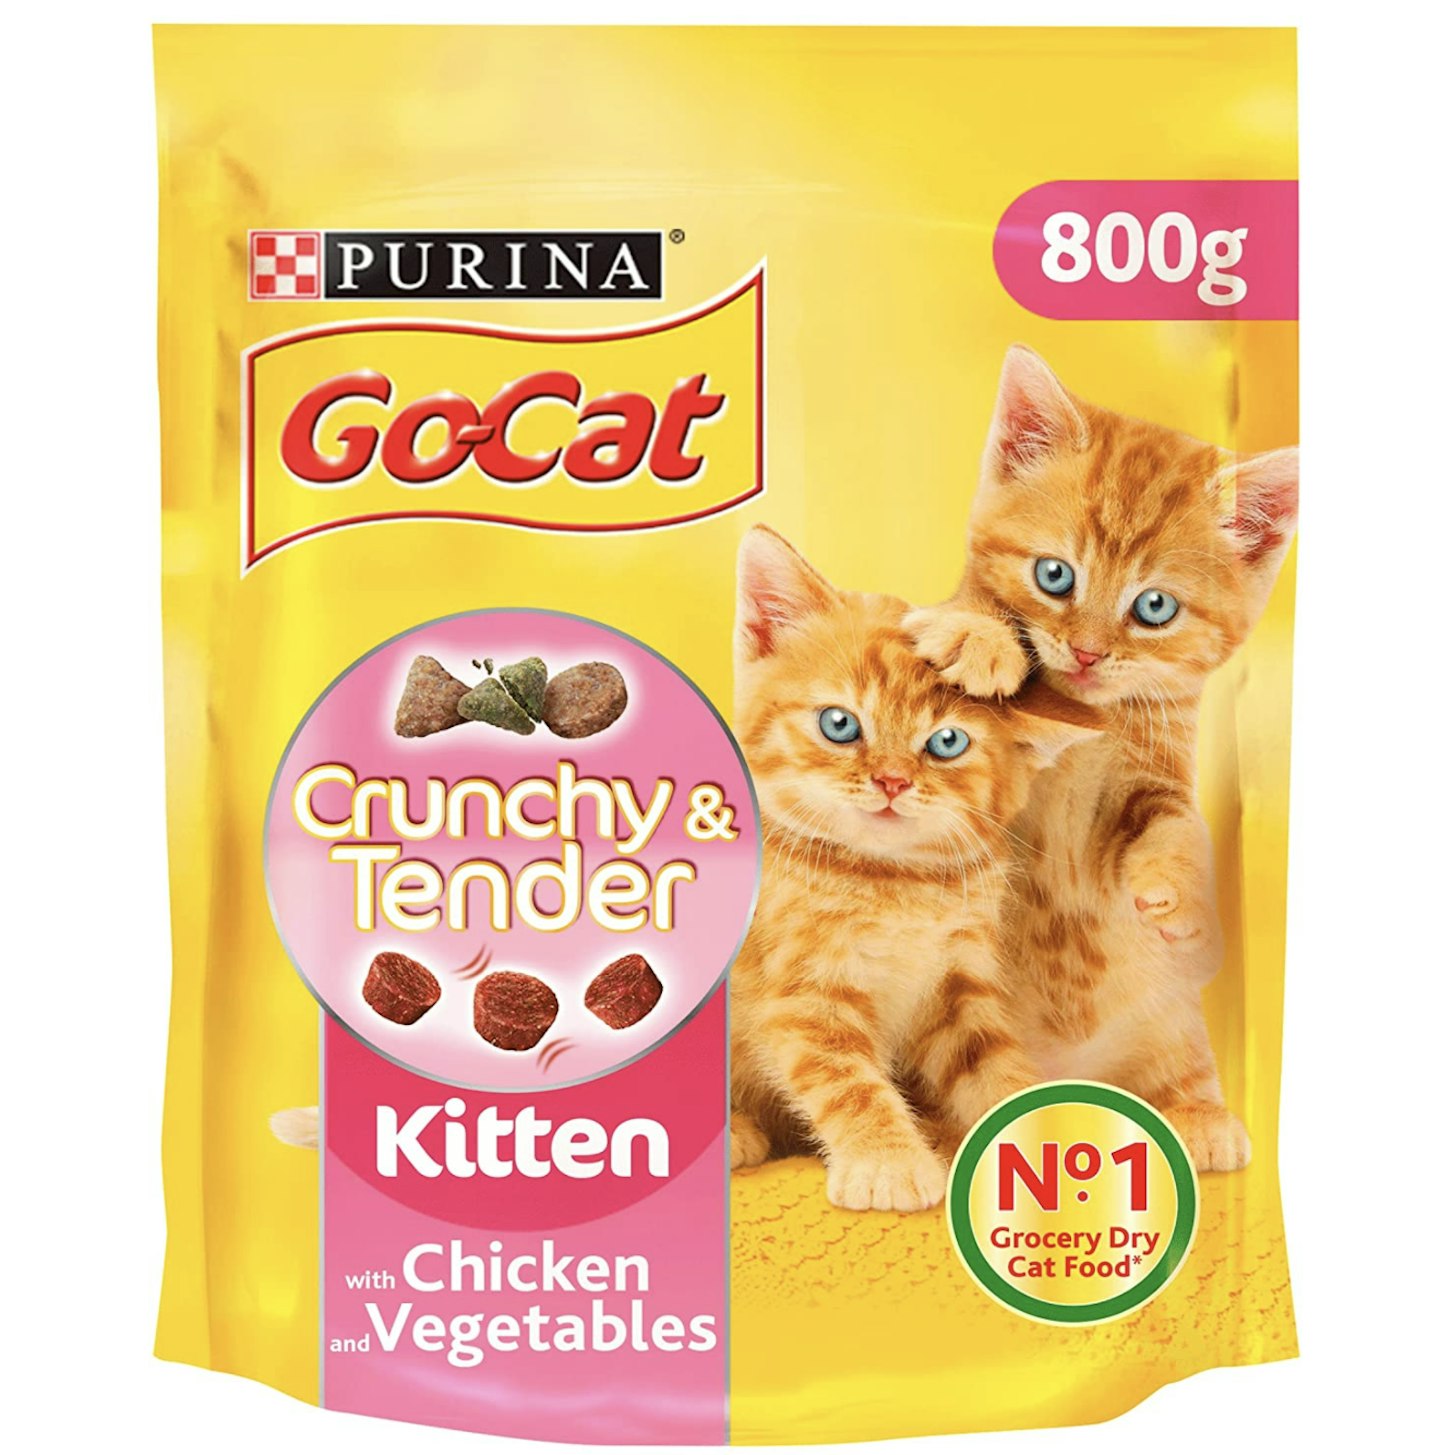 Go-Cat Crunchy & Tender Kitten Dry Cat Food